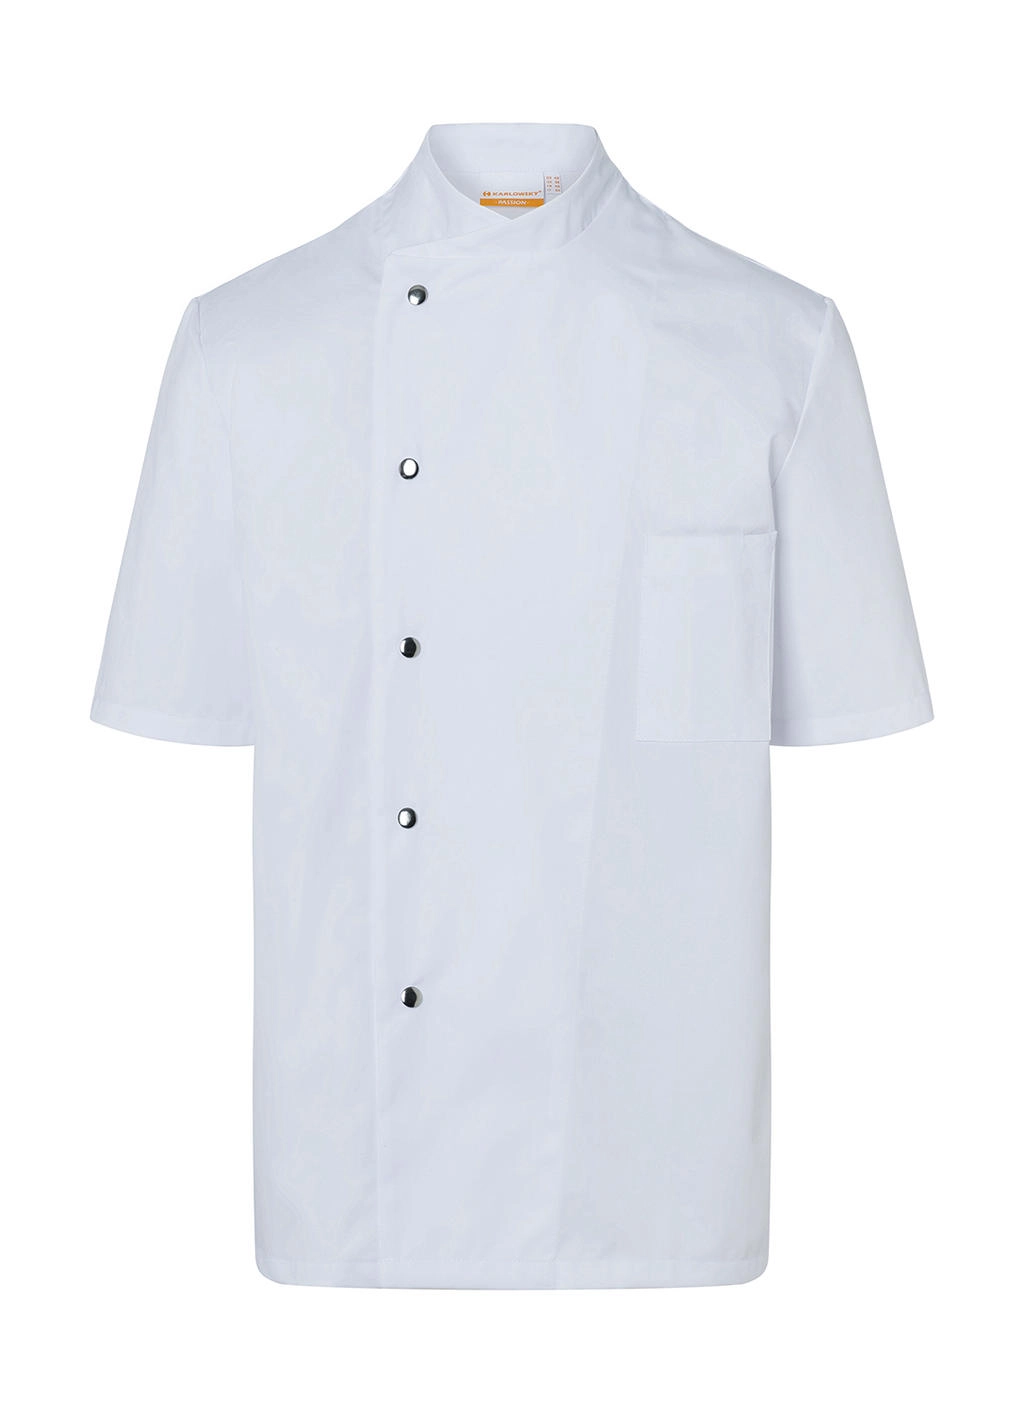 Chef Jacket Gustav Short Sleeve zum Besticken und Bedrucken in der Farbe White mit Ihren Logo, Schriftzug oder Motiv.